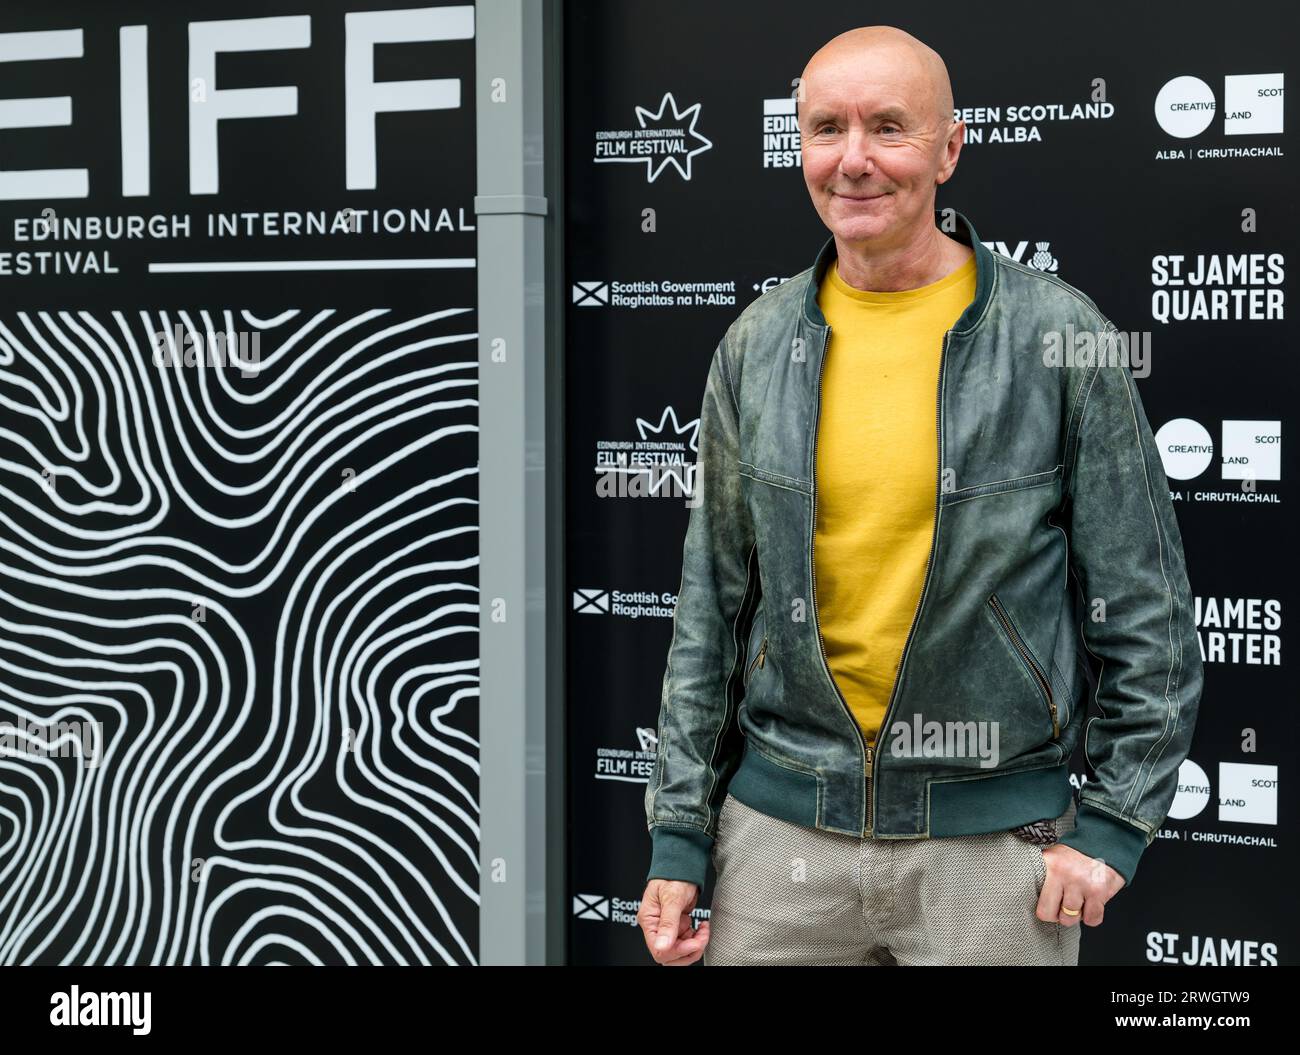 Auteur irvine Welsh au cinéma Everyman, Edinburgh International film Festival, Ecosse, Royaume-Uni Banque D'Images